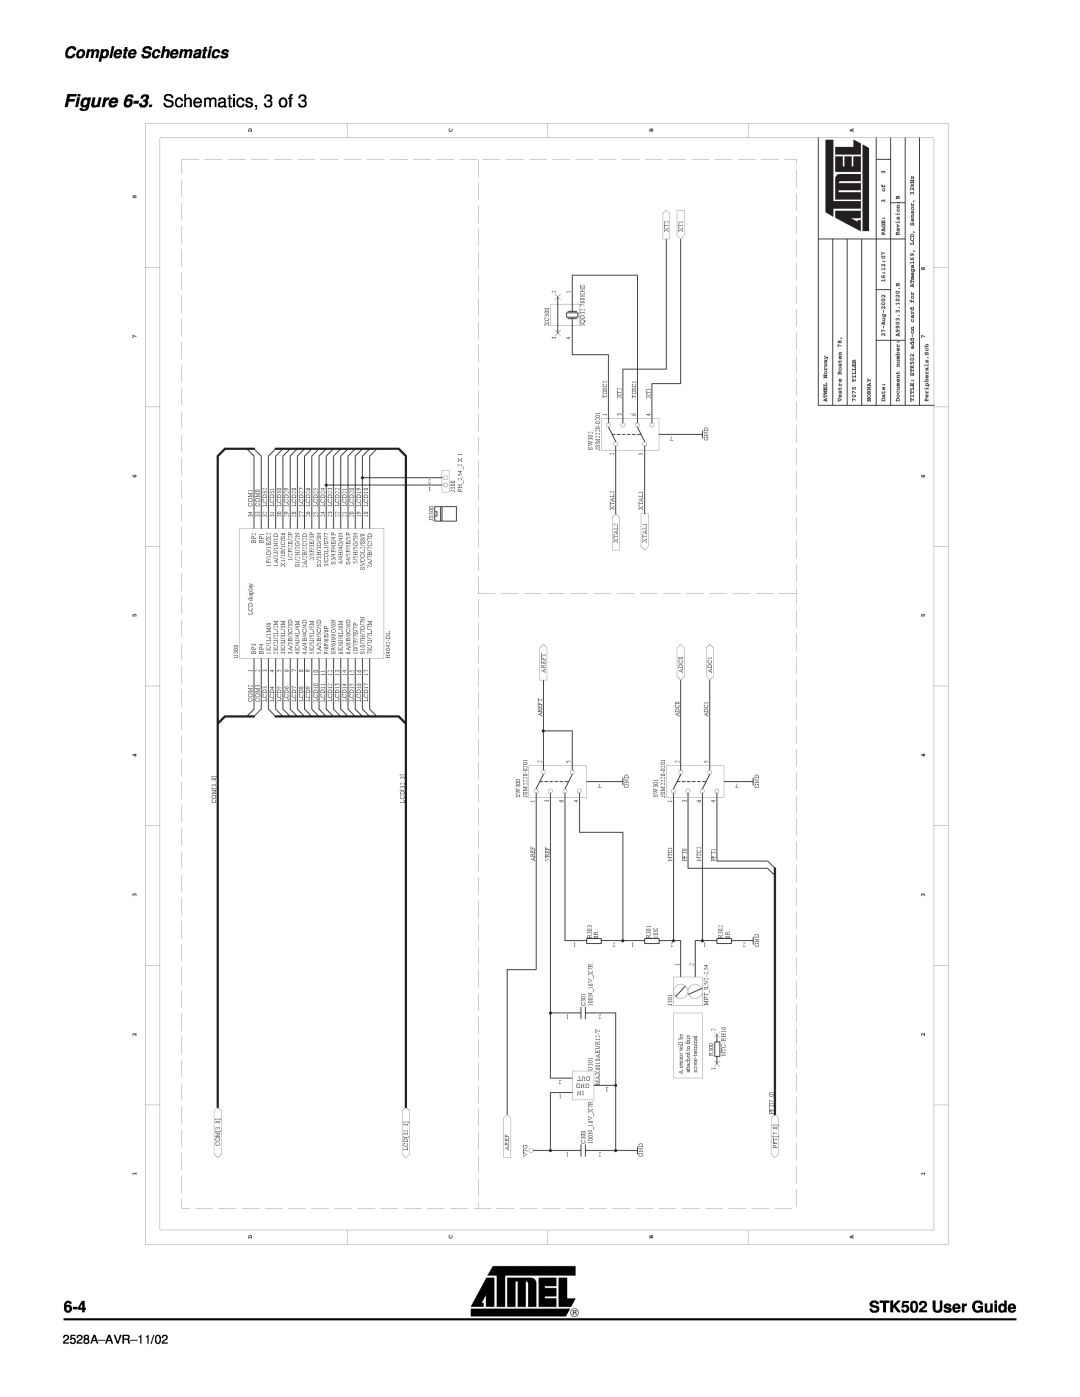 Atmel STK502 manual FigureSchematics, CompleteSchematics, 2528A-AVR-11/02 